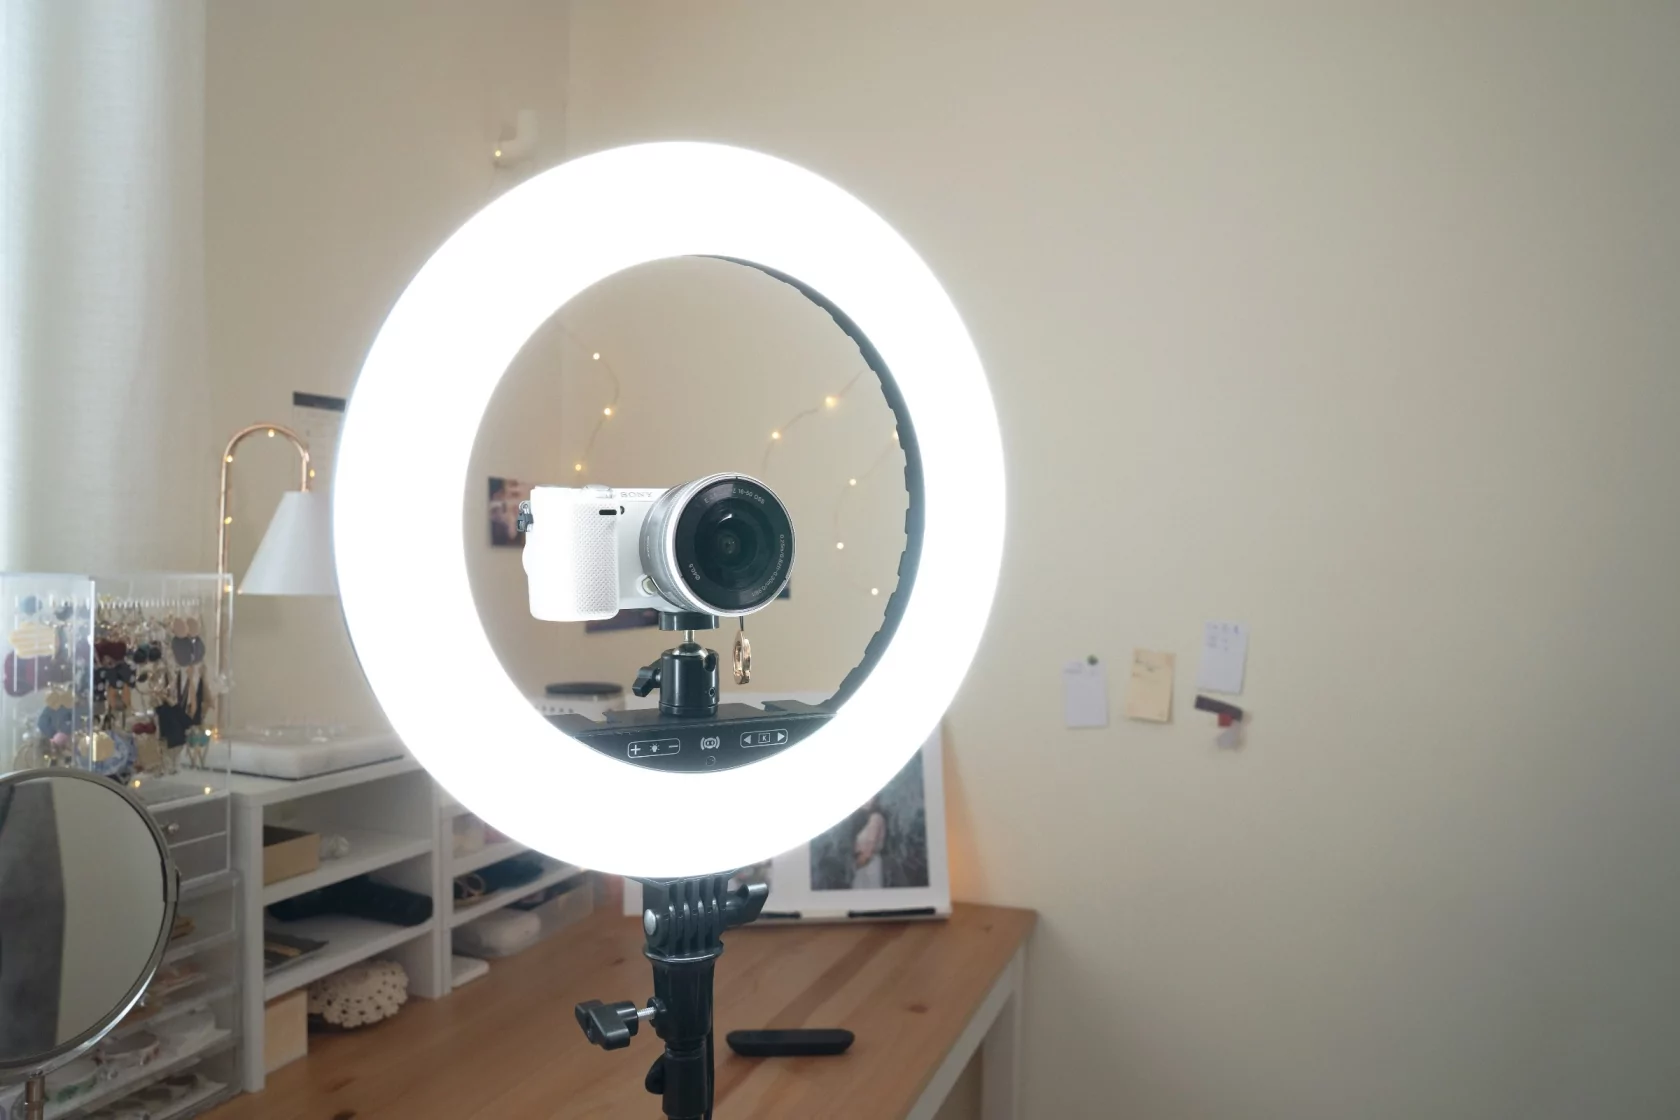 Streamplify выпустила новые наборы для стримеров: камеру, микрофон, кольцевые лампы и прочее